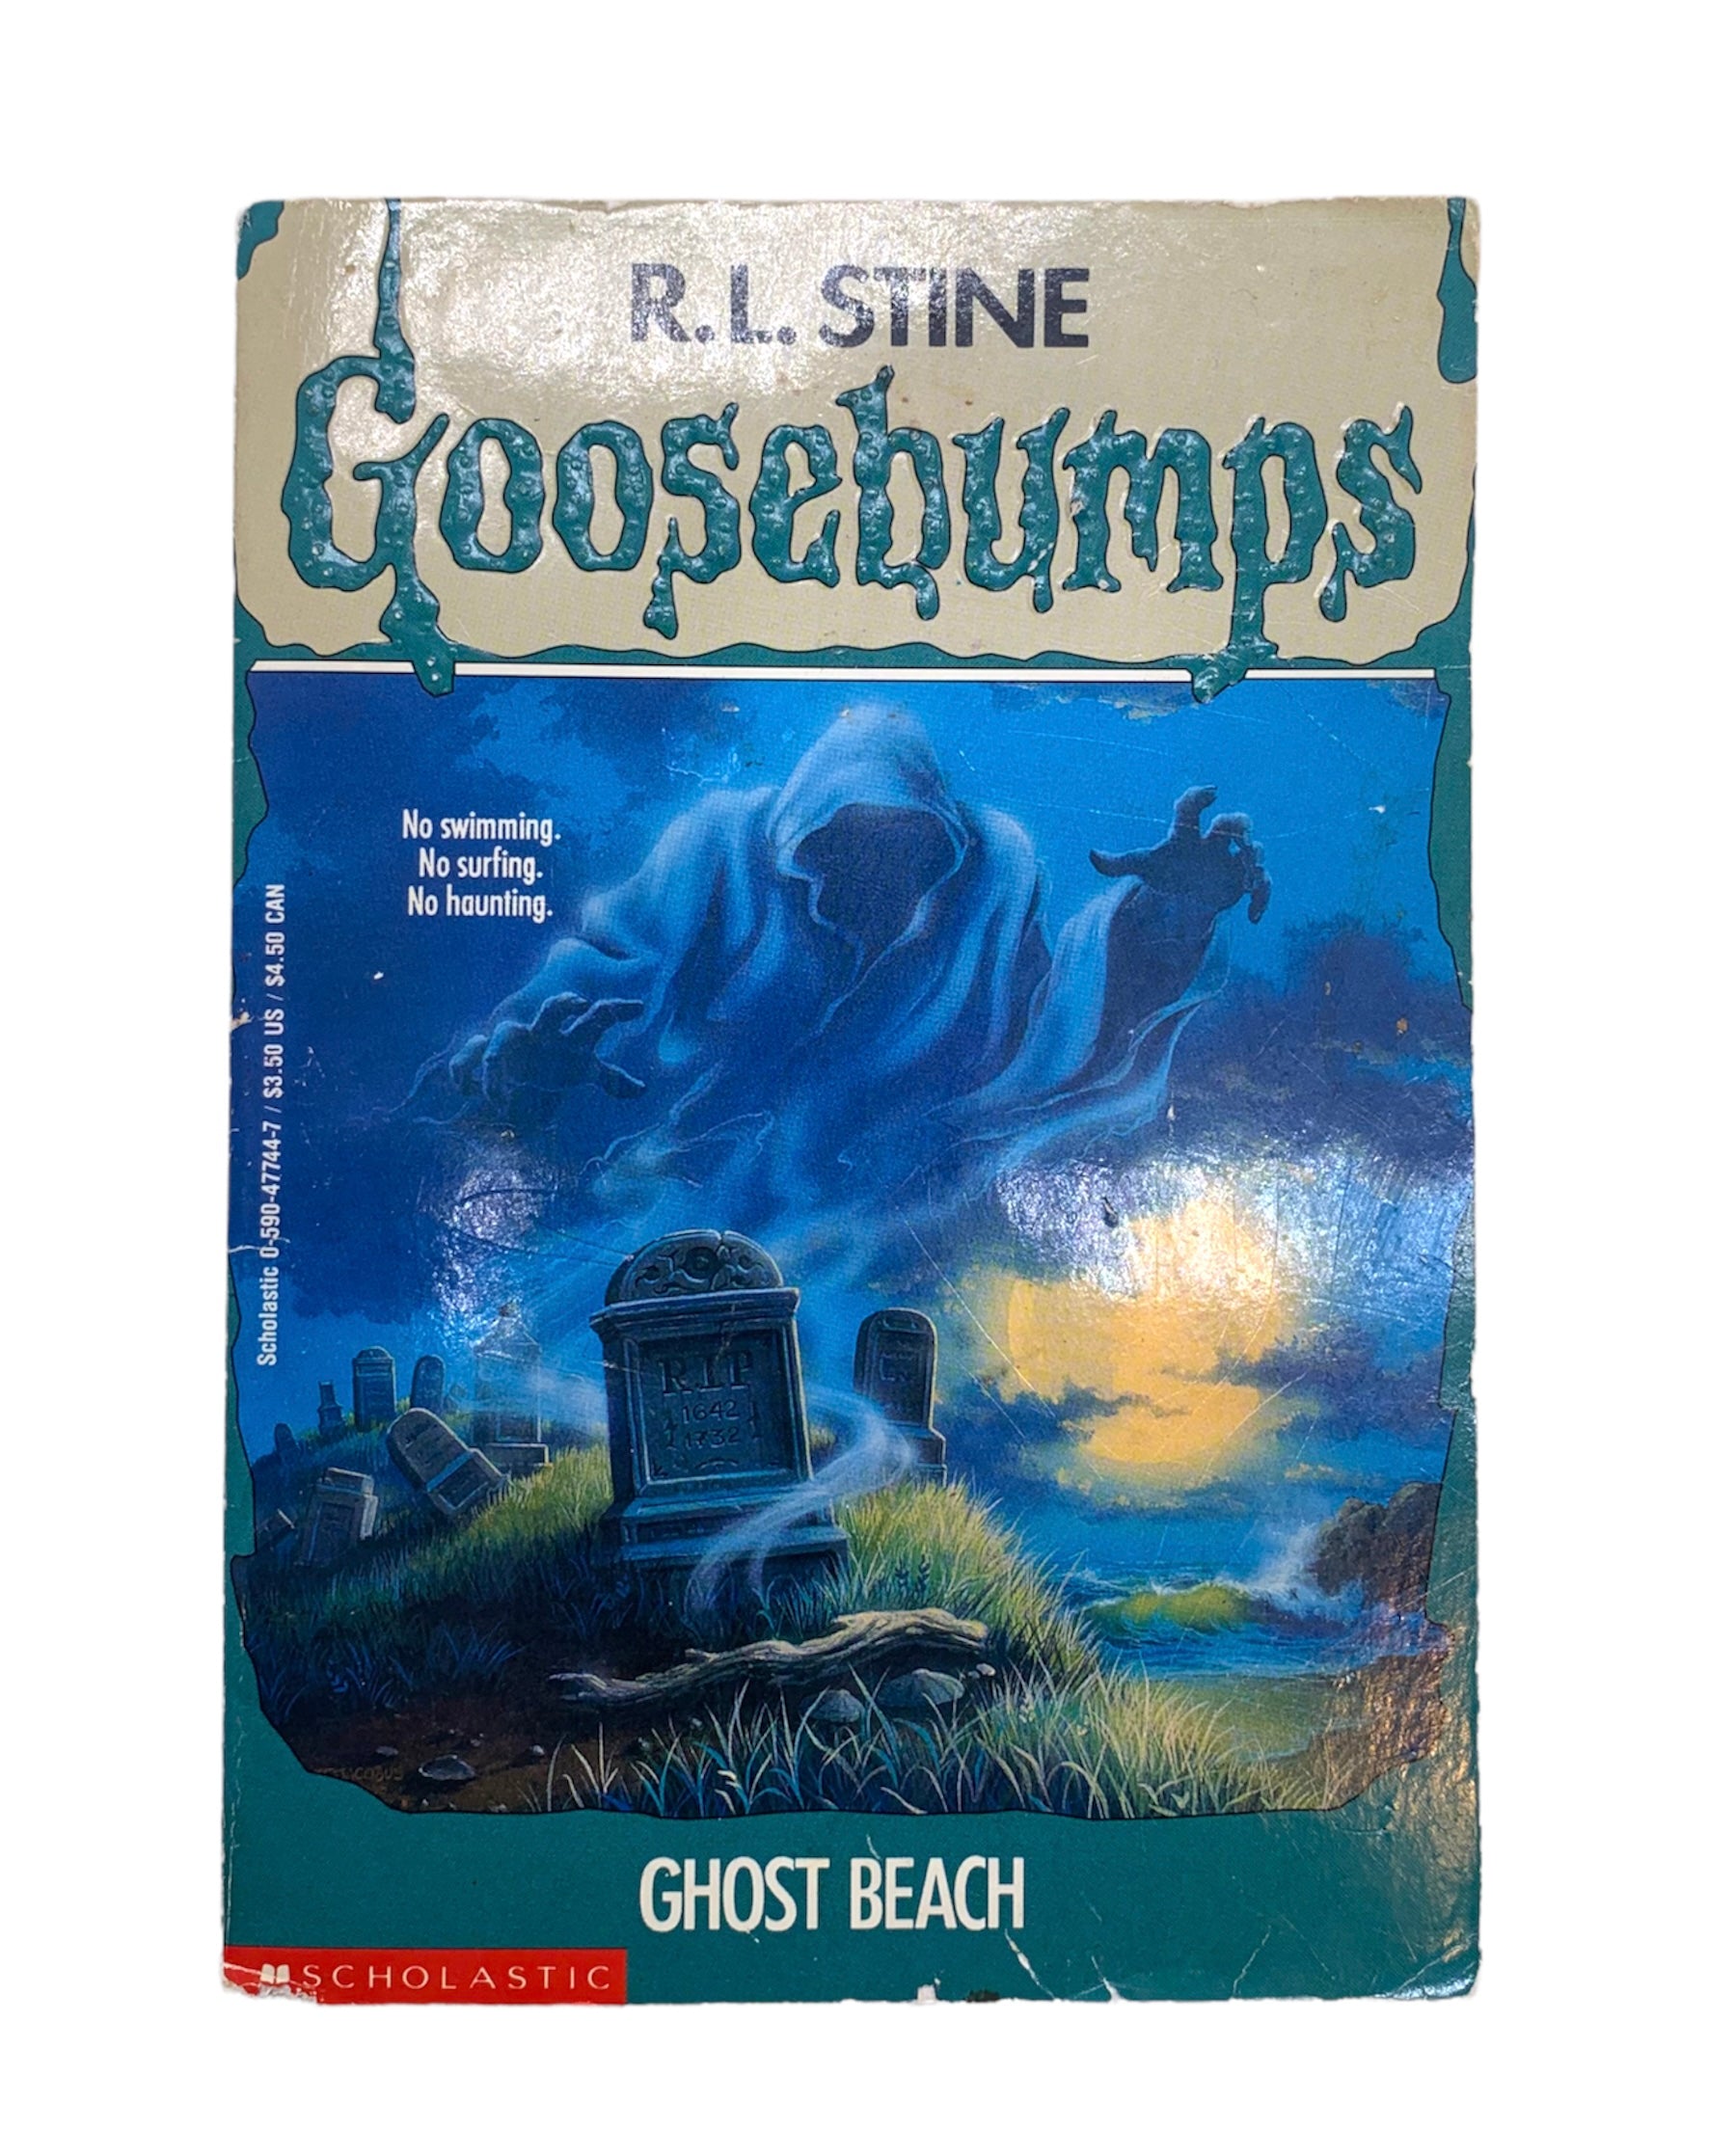 Goosebumps: Ghost Beach [DVD] [Import] g6bh9ry www.krzysztofbialy.com